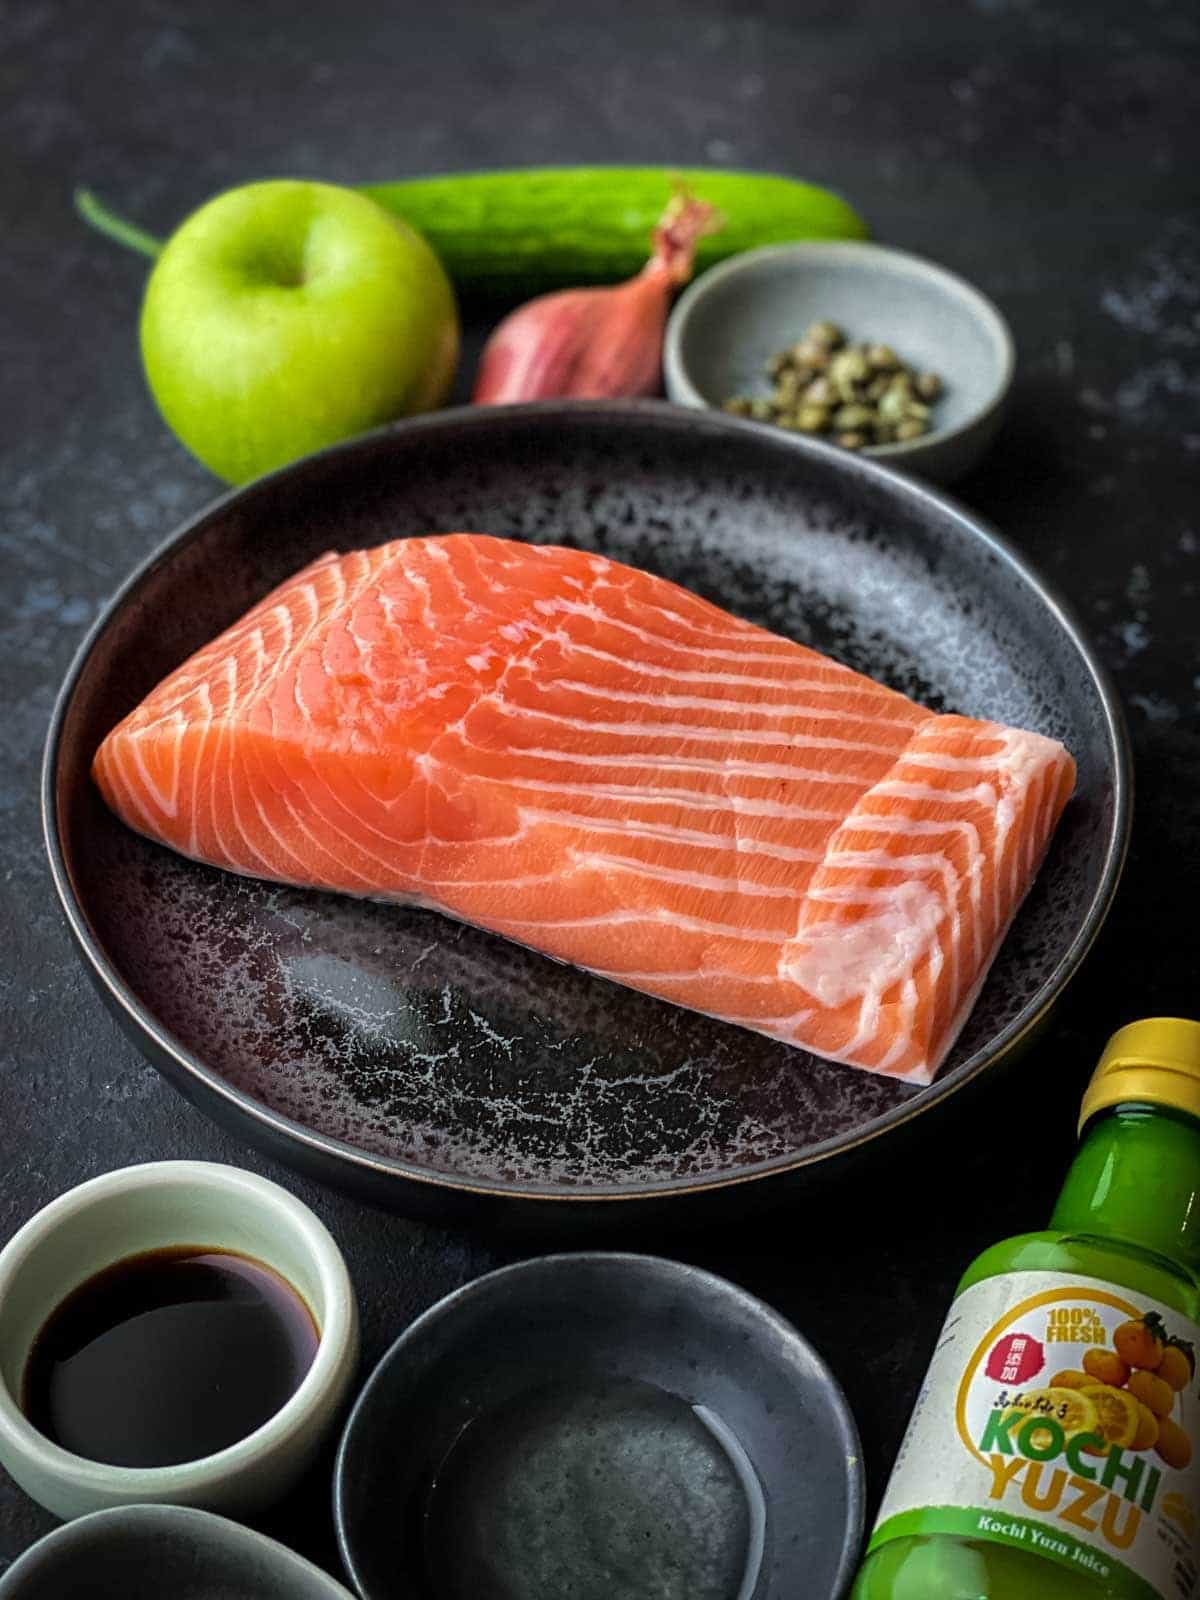 Sashimi grade salmon